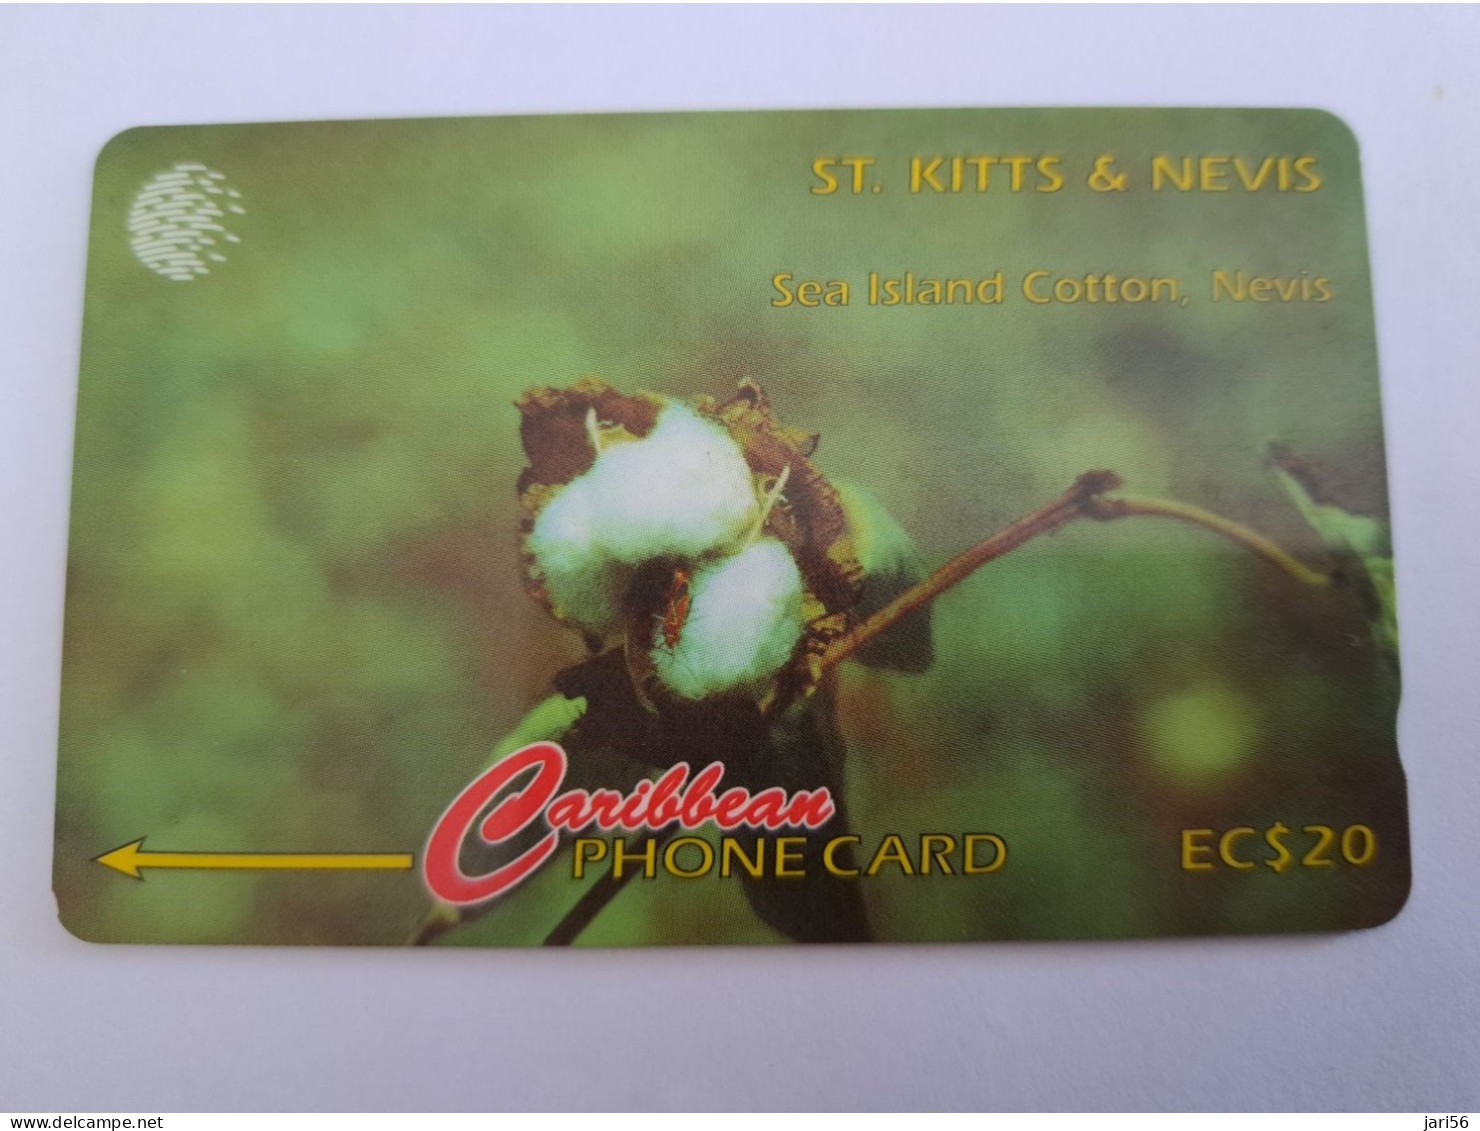 ST KITTS & NEVIS  GPT CARD $20 STK 77A / SEA ISLAND COTTON NEVIS   **13323** - Saint Kitts & Nevis